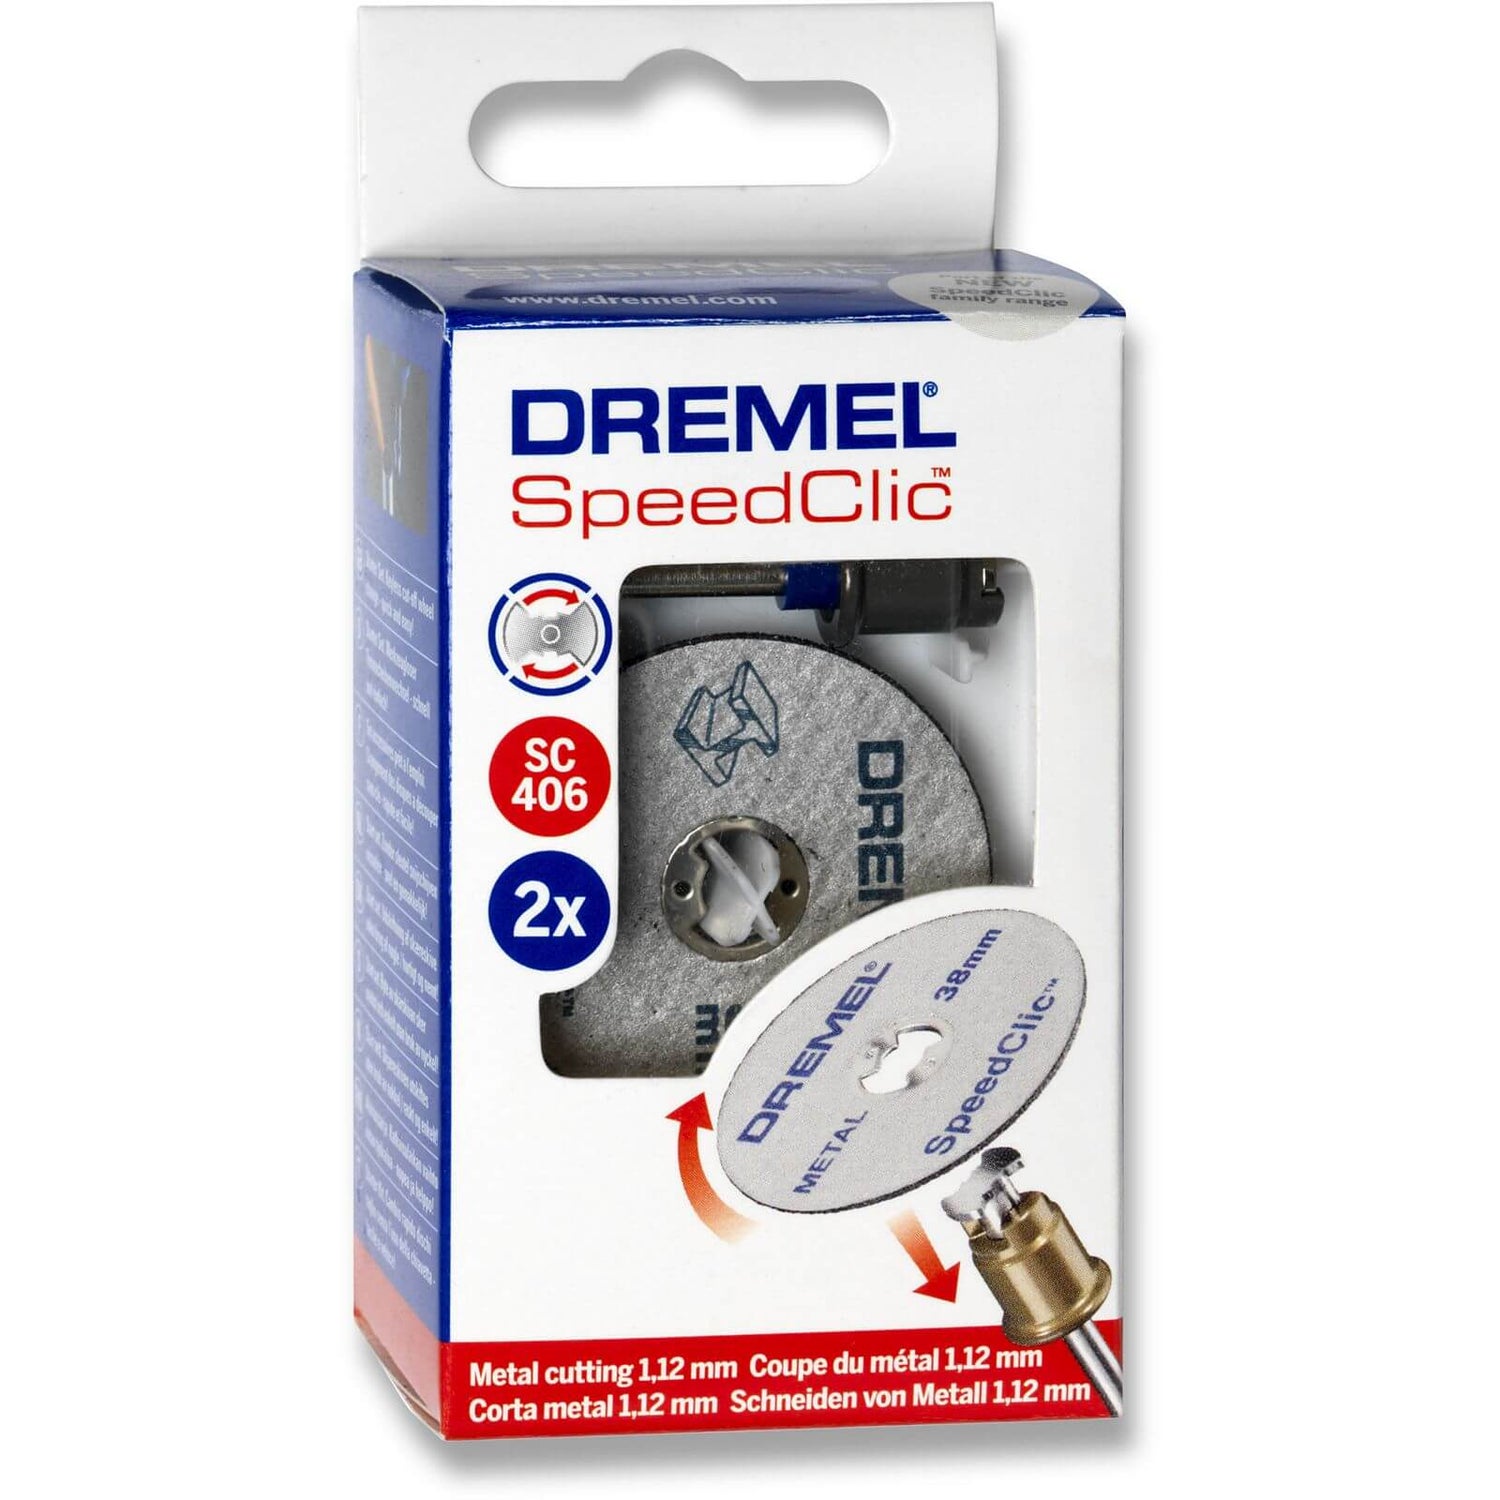 Dremel SpeedClic Starter 406S |